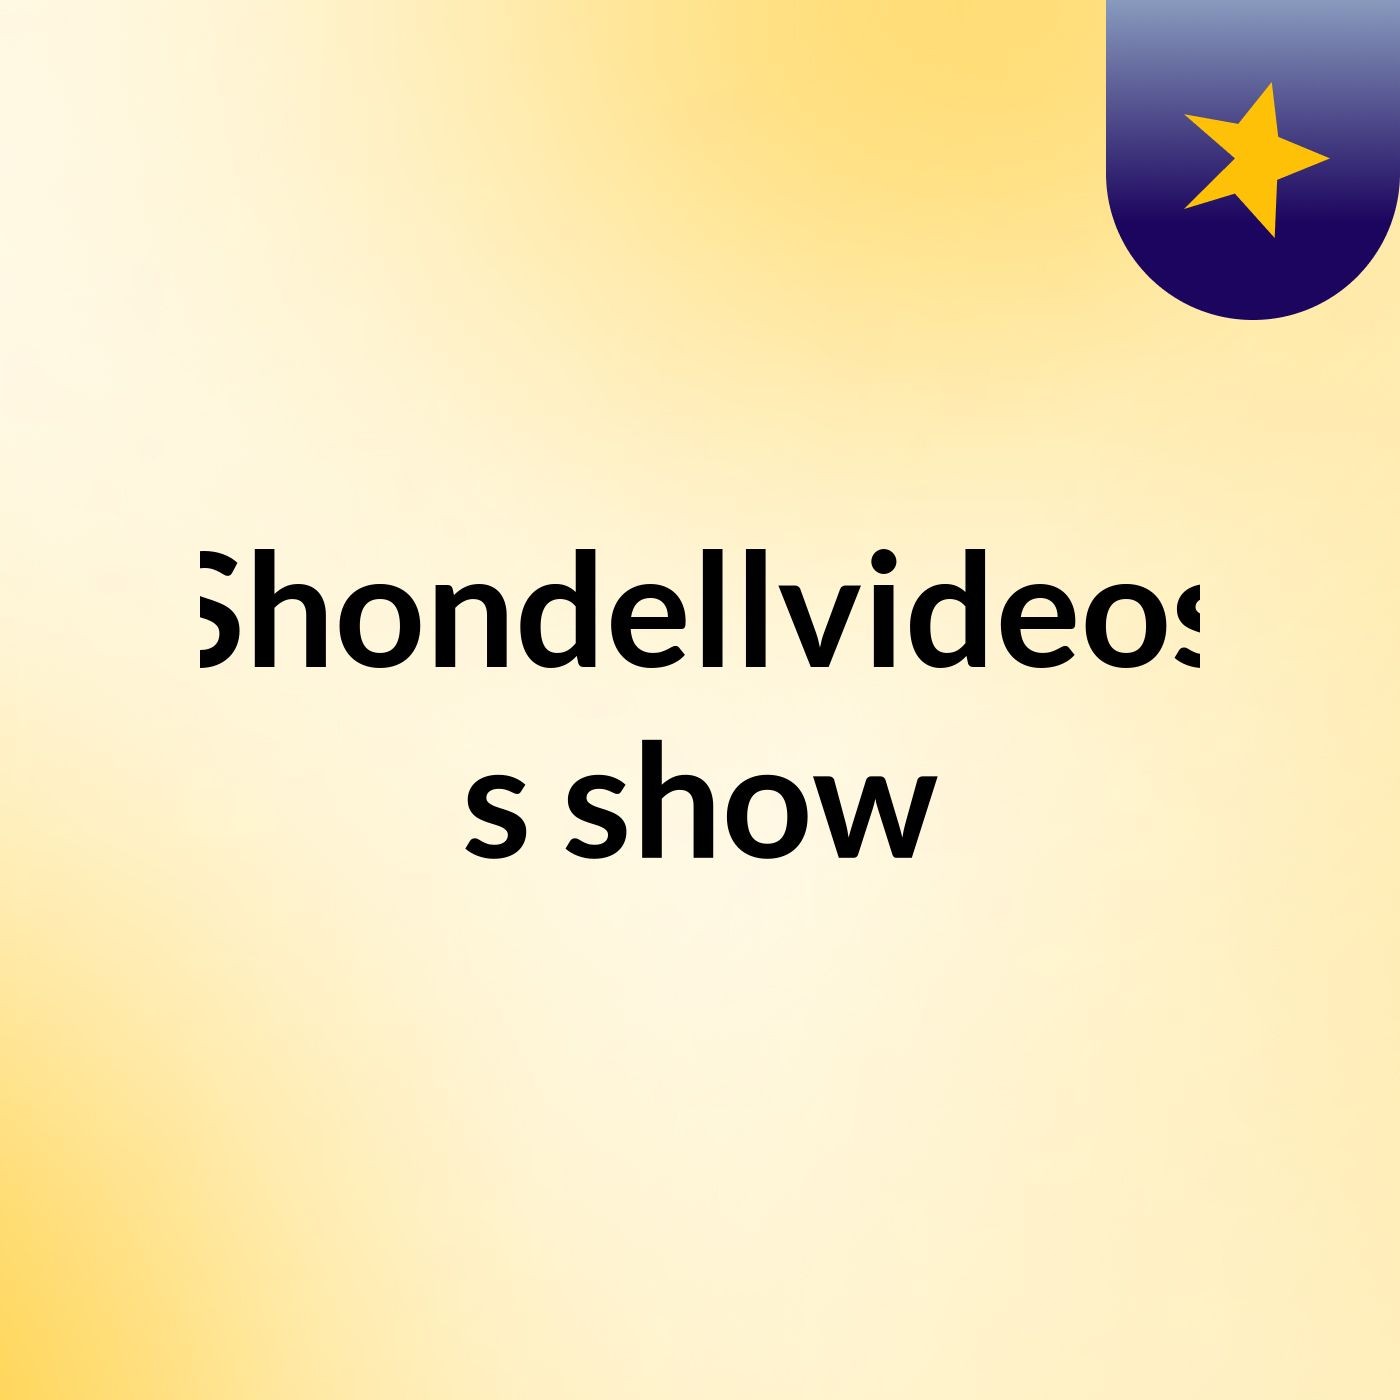 Shondellvideos's show